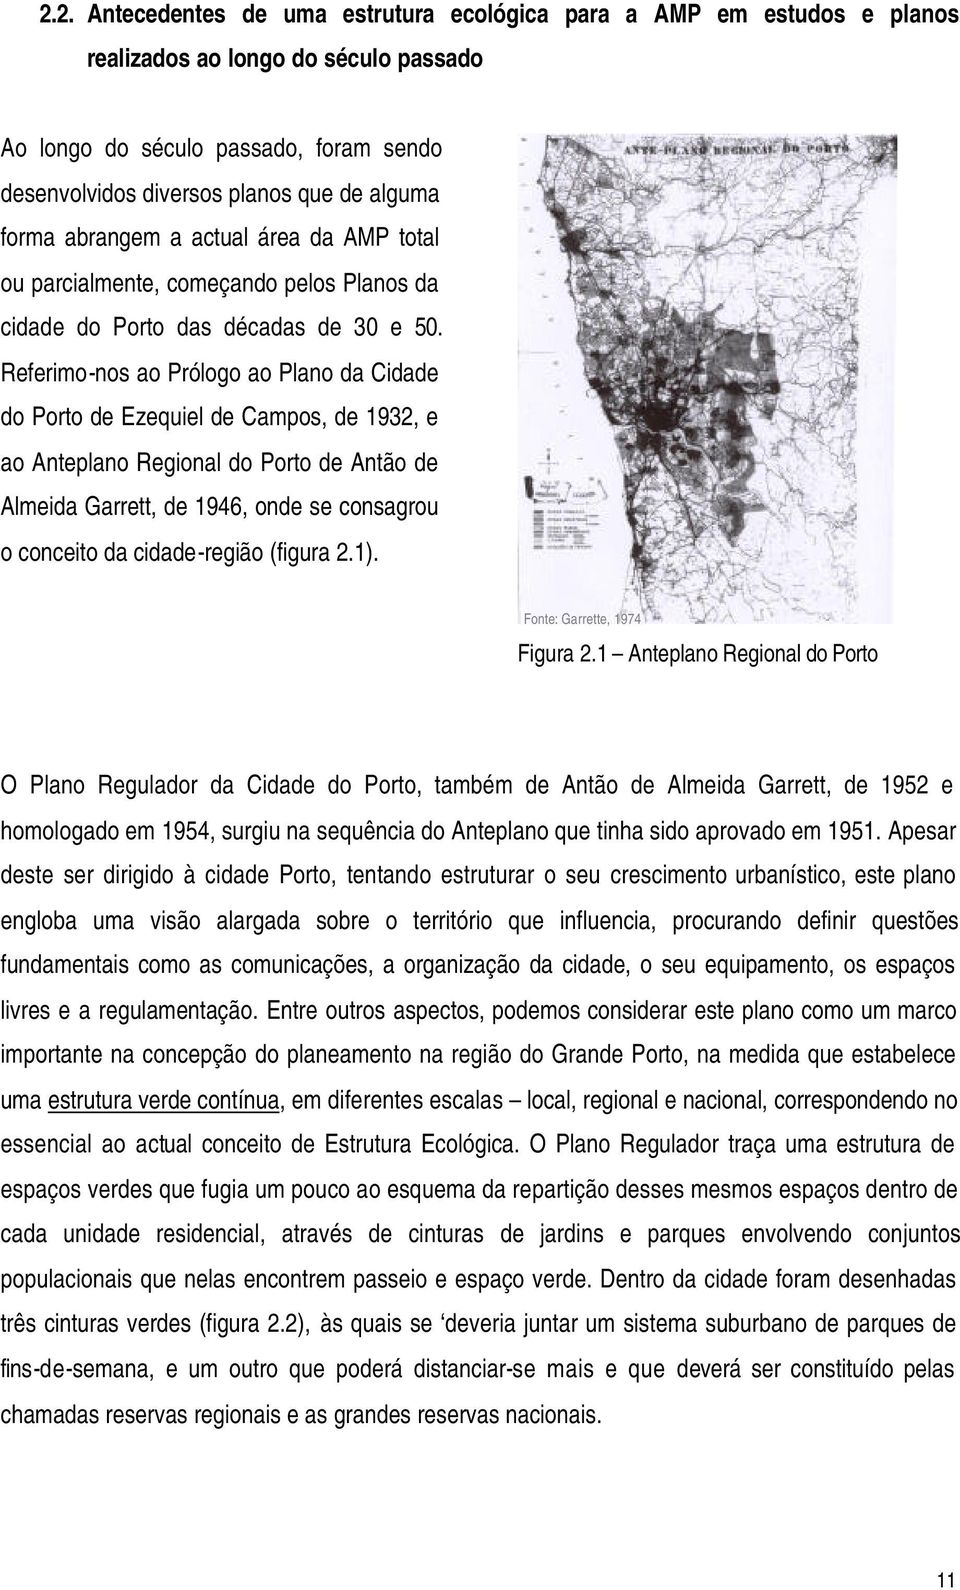 Referimo-nos ao Prólogo ao Plano da Cidade do Porto de Ezequiel de Campos, de 1932, e ao Anteplano Regional do Porto de Antão de Almeida Garrett, de 1946, onde se consagrou o conceito da